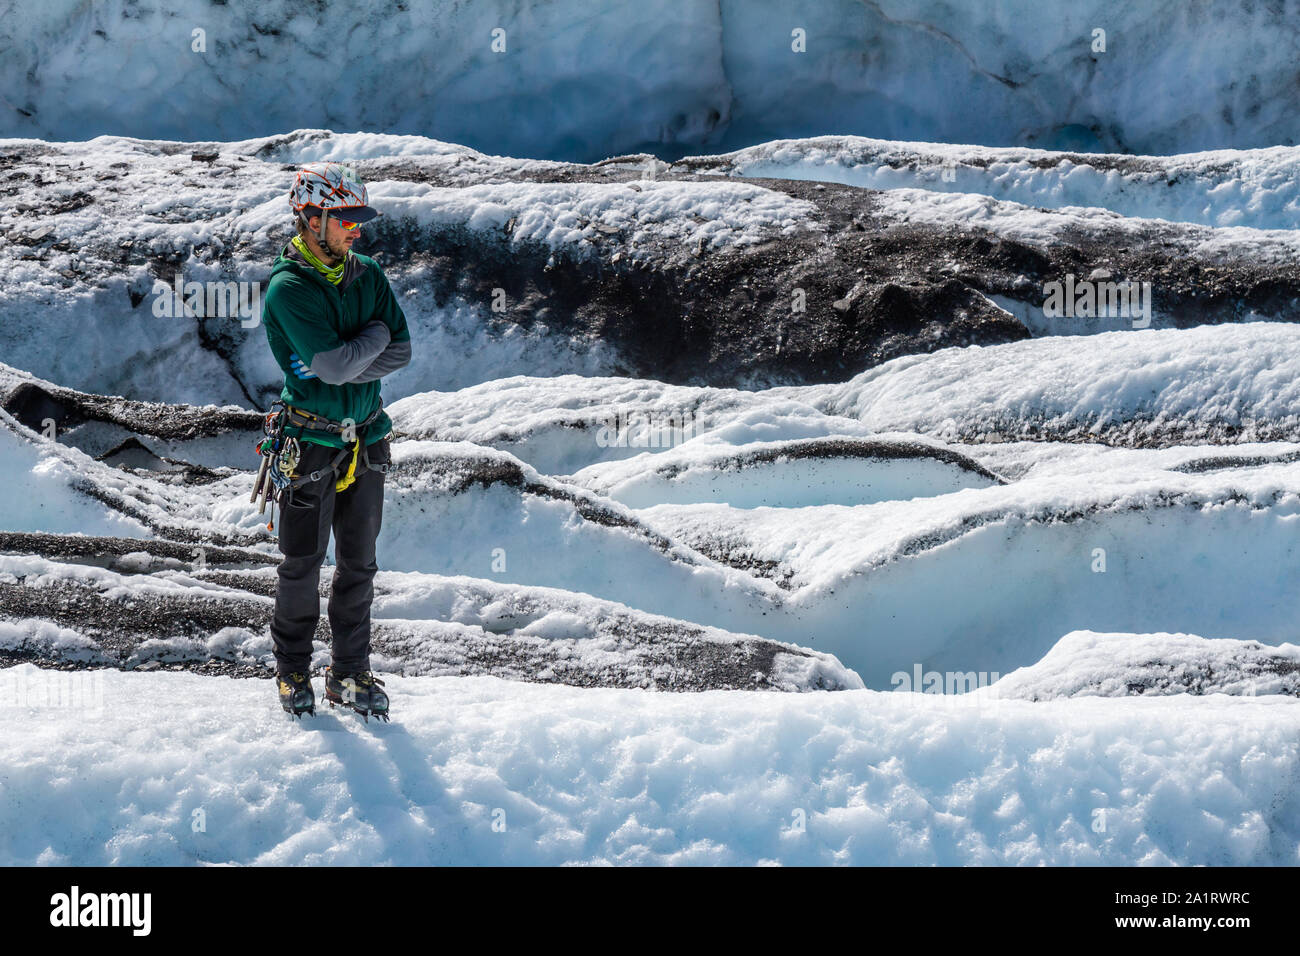 Ein Gletscher Guide steht Andere beobachten Auf der Matanuska Gletscher. Seine Arme sind gekreuzt, als er geduldig wartet. Stockfoto